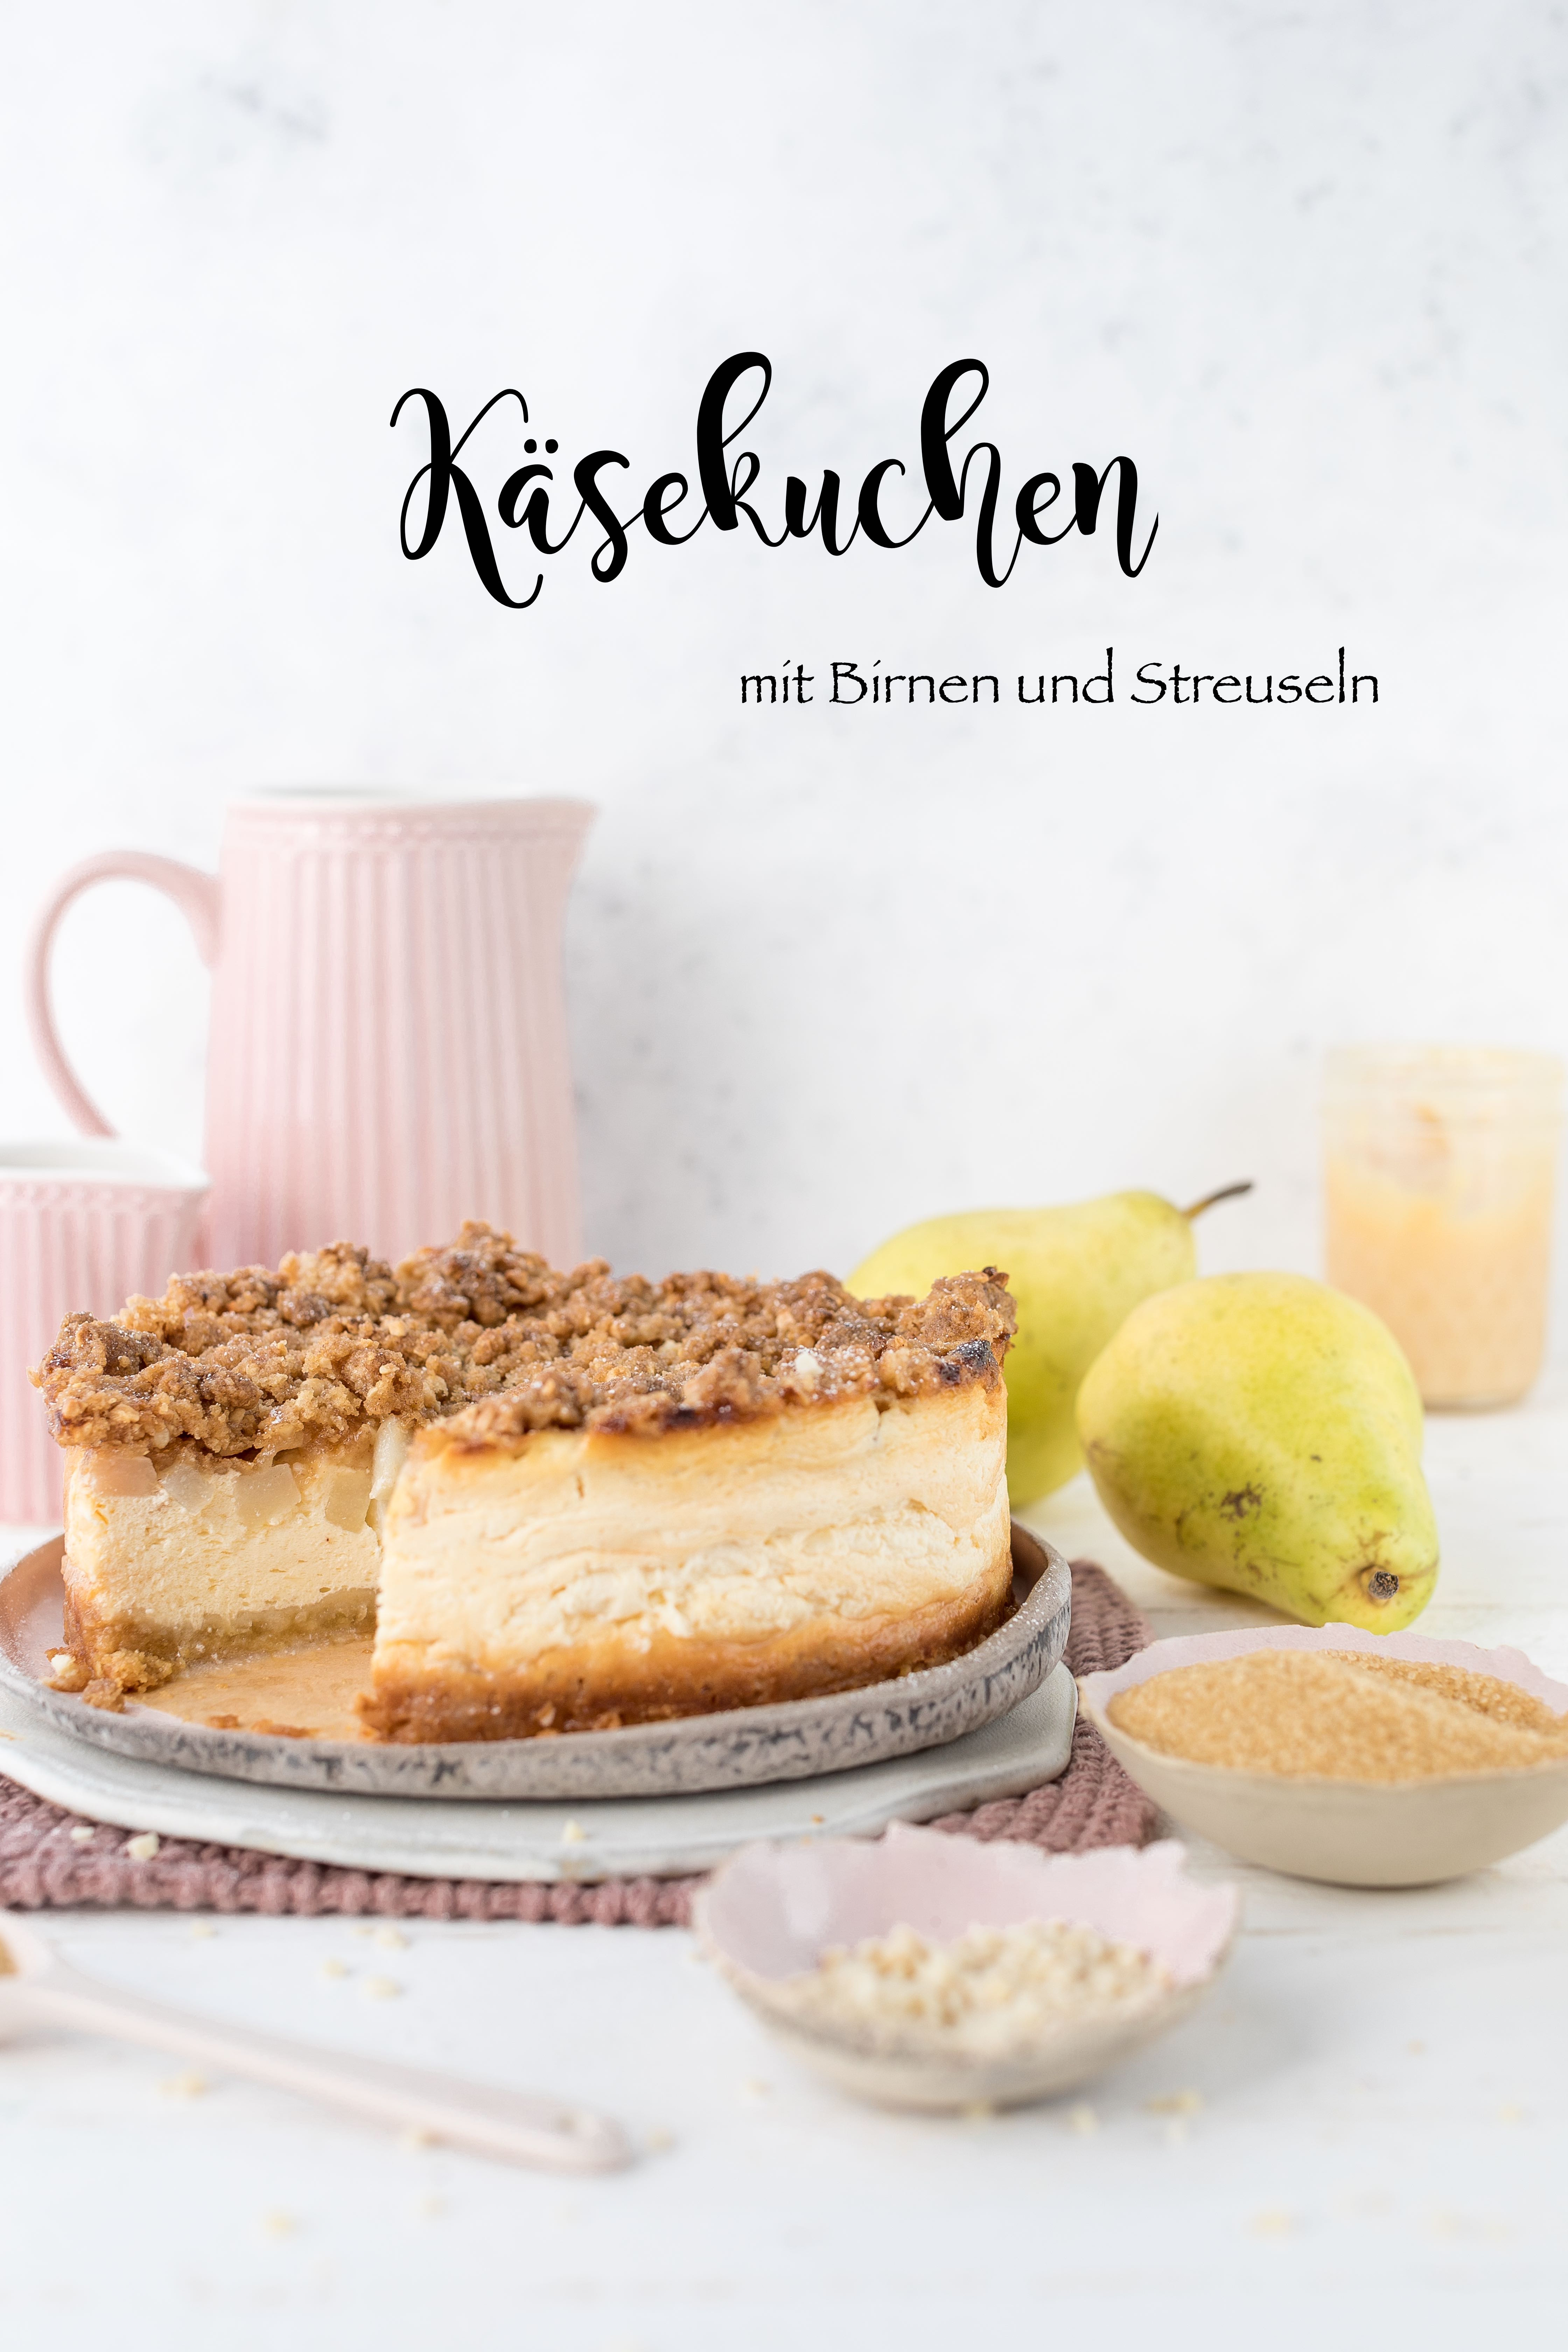 Rezept Käsekuchen Birne Streusel #einfach #käsekuchen #herbst #birne #backen